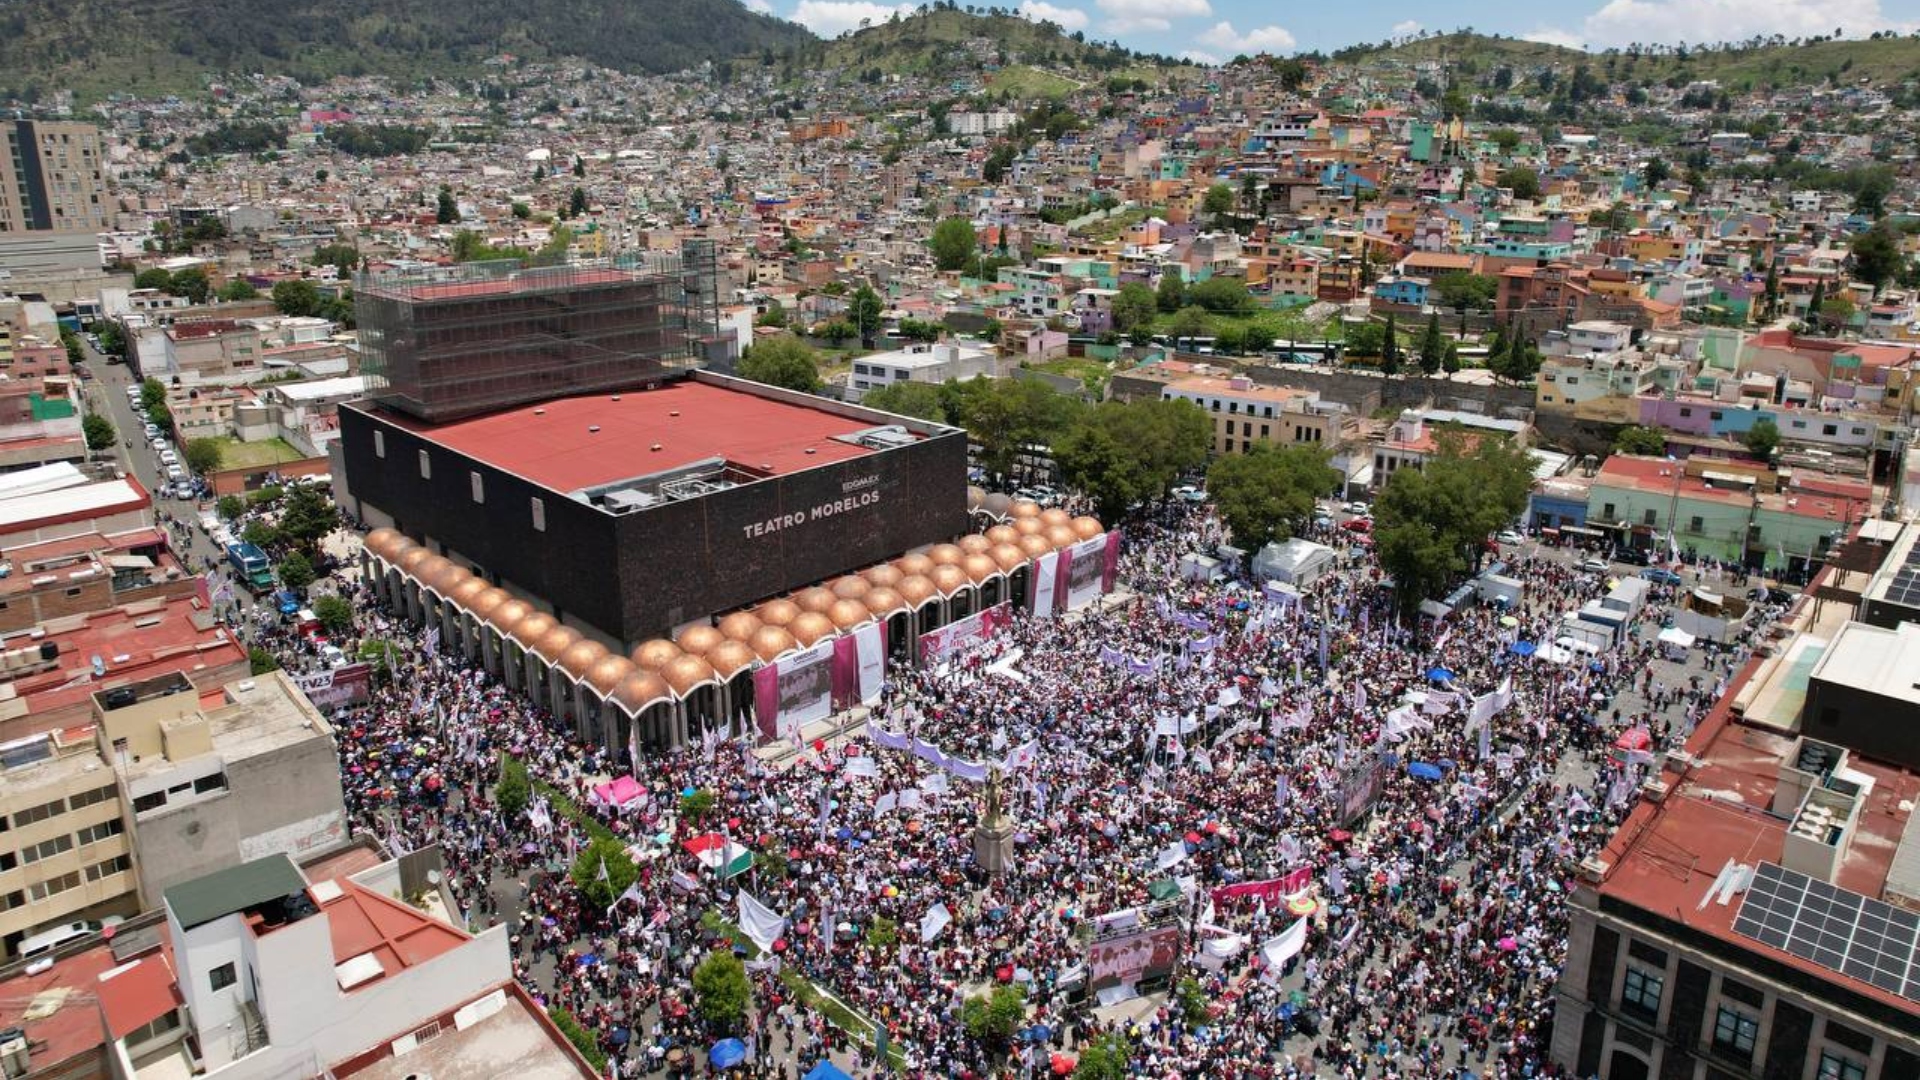 Simpatizantes y funcionarios de Morena se reunieron en la explanada del Teatro Morelos, en Toluca, Estado de México el pasado 12 de junio (Foto: Twitter/@PartidoMorenaMx)